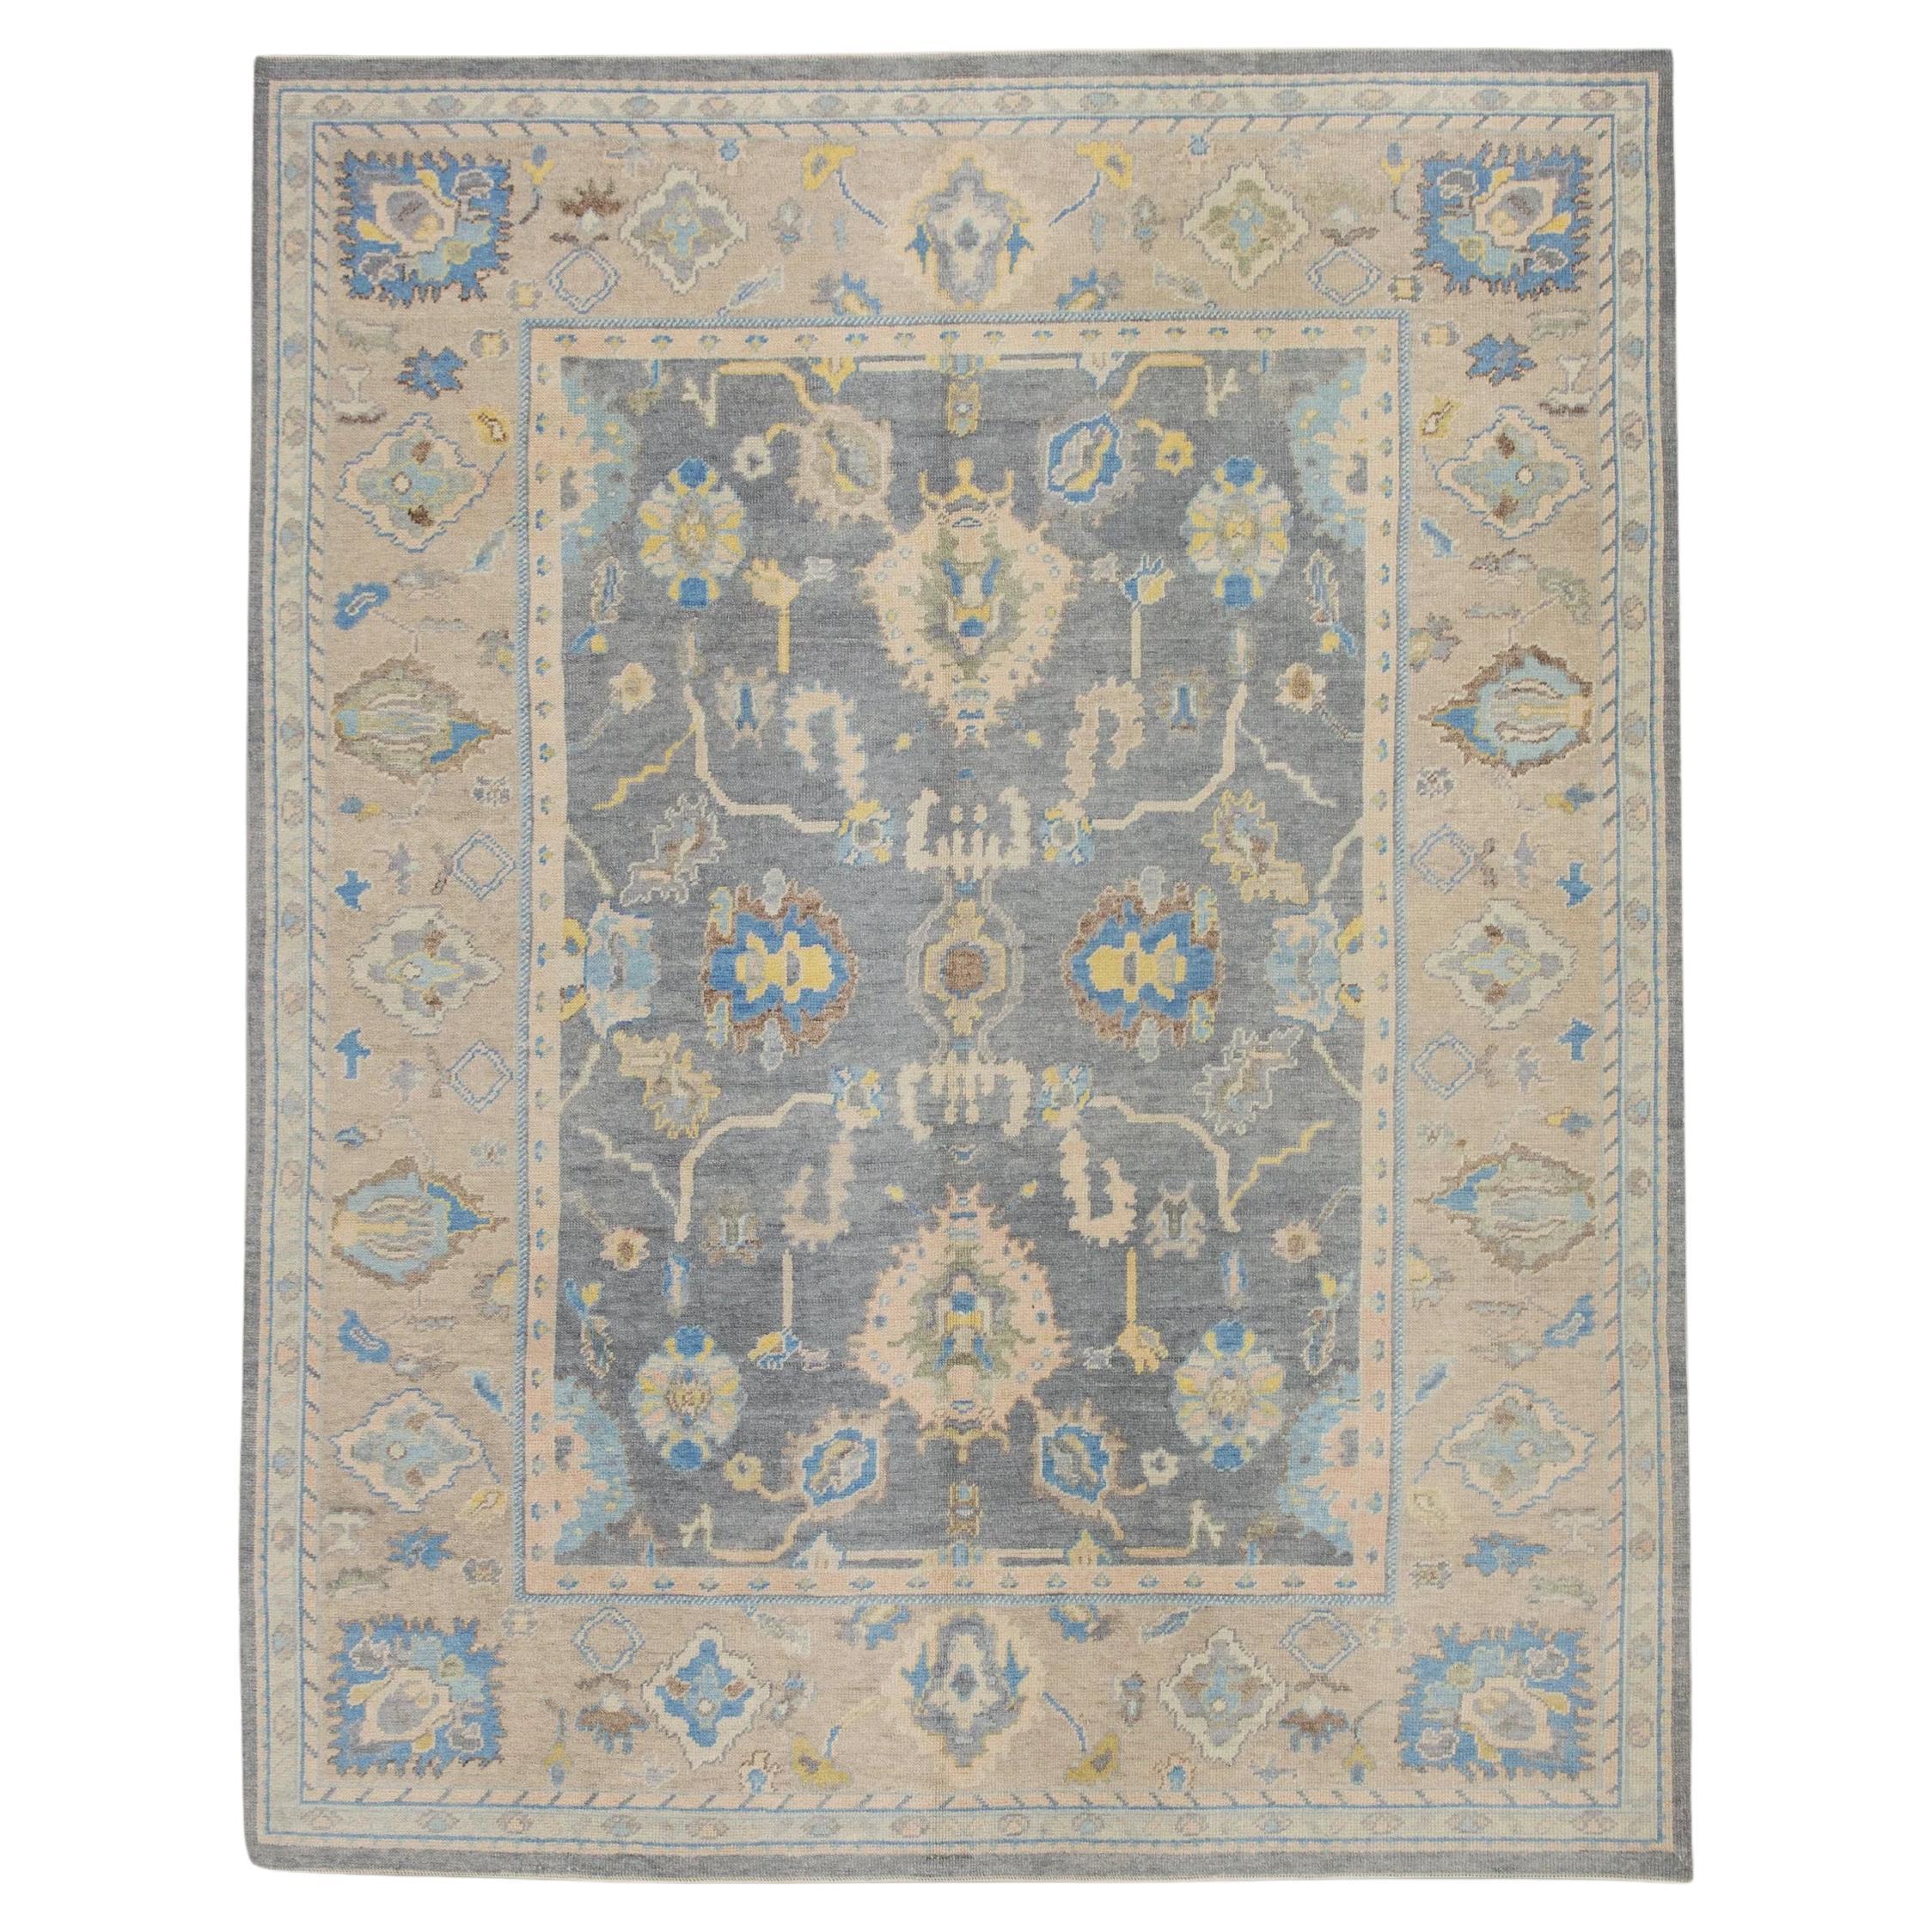 Tapis turc Oushak en laine à motifs floraux tissés à la main en brun et bleu 7'11" x 9'11".